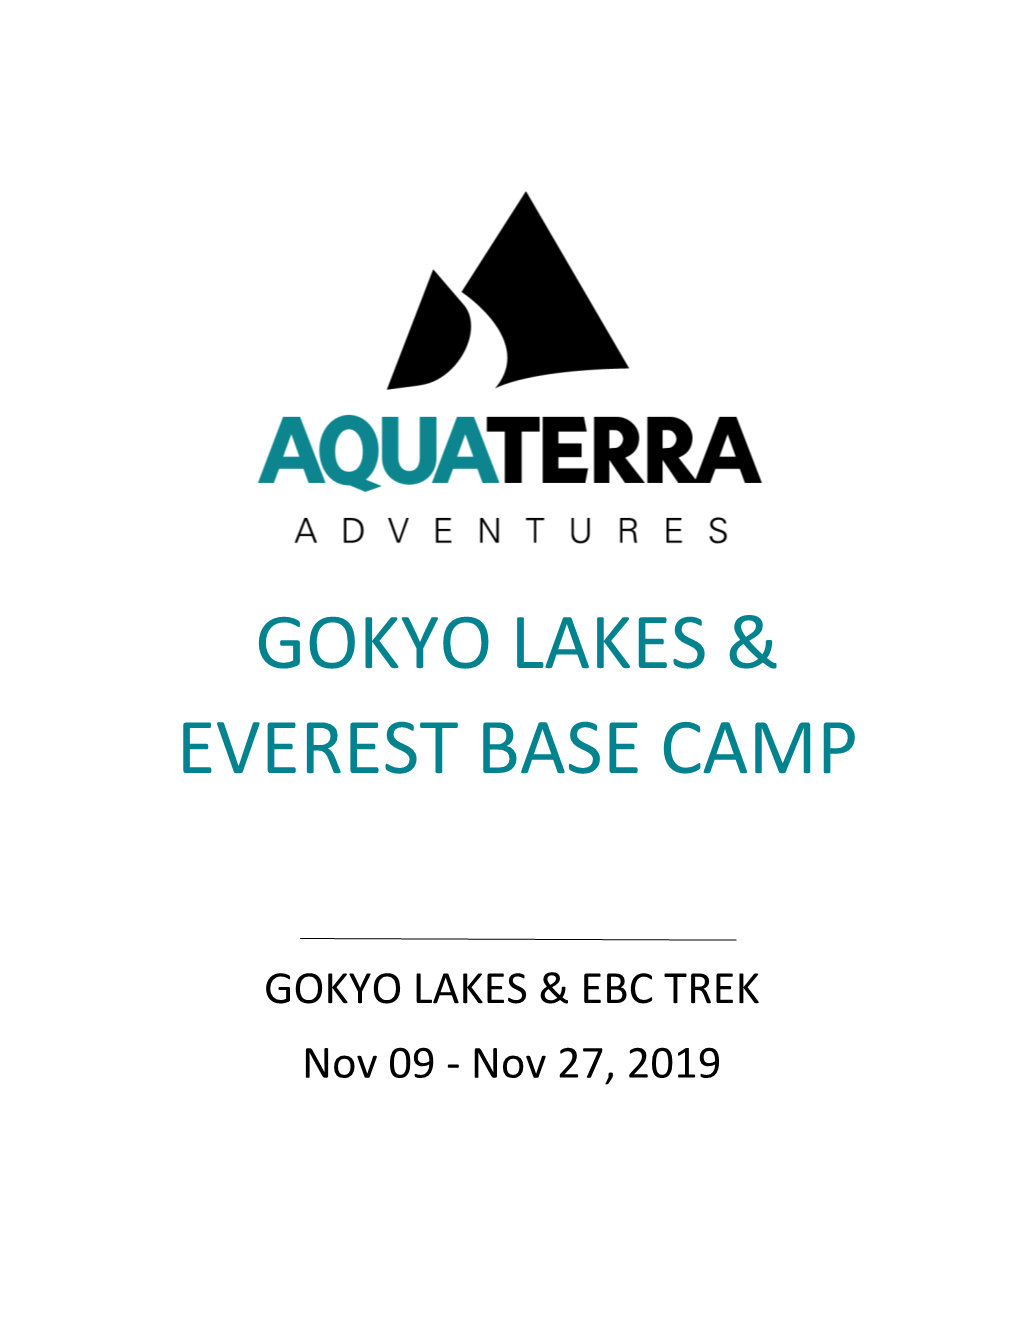 Gokyo Lakes & Everest Base Camp